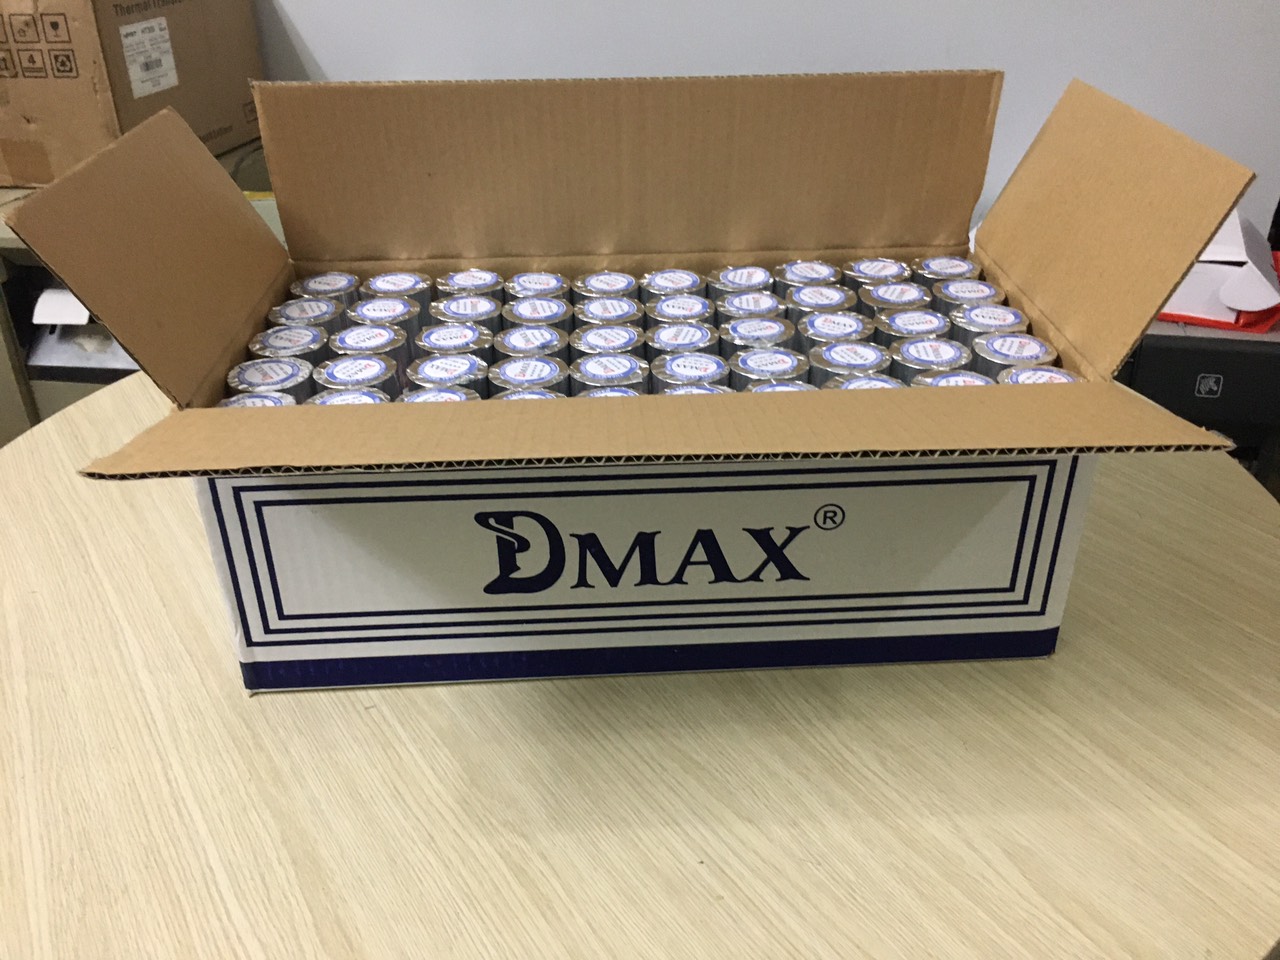 Giấy in bill Dmax , giây in cảm nhiệt, khổ 80x45 sử dụng dùng cho máy in nhiệt, máy pos máy ATM và các máy in chuyên dụng dùng giấy in nhiệt